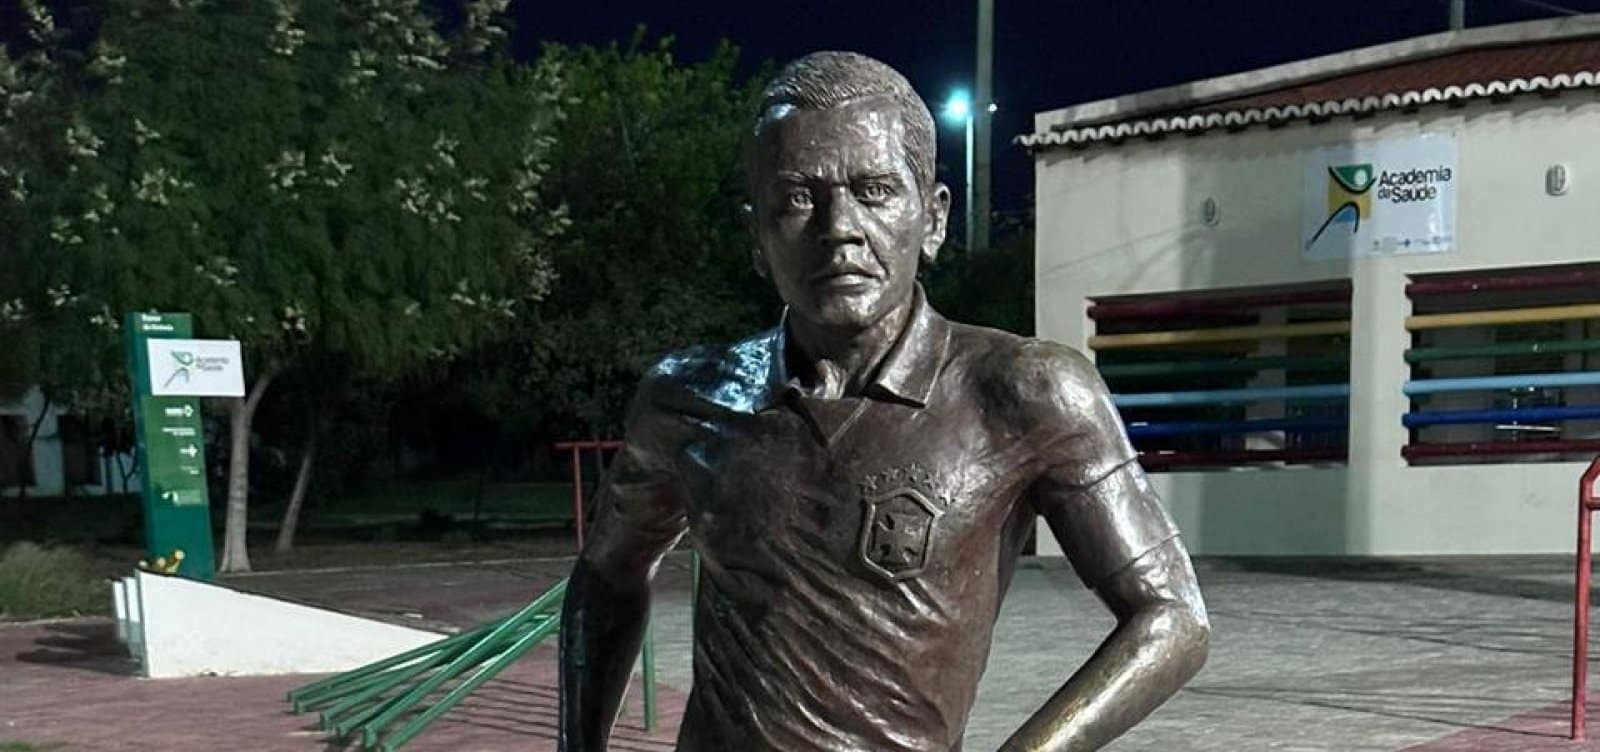 Moradores de Juazeiro querem a retirada de estátua de Daniel Alves da cidade